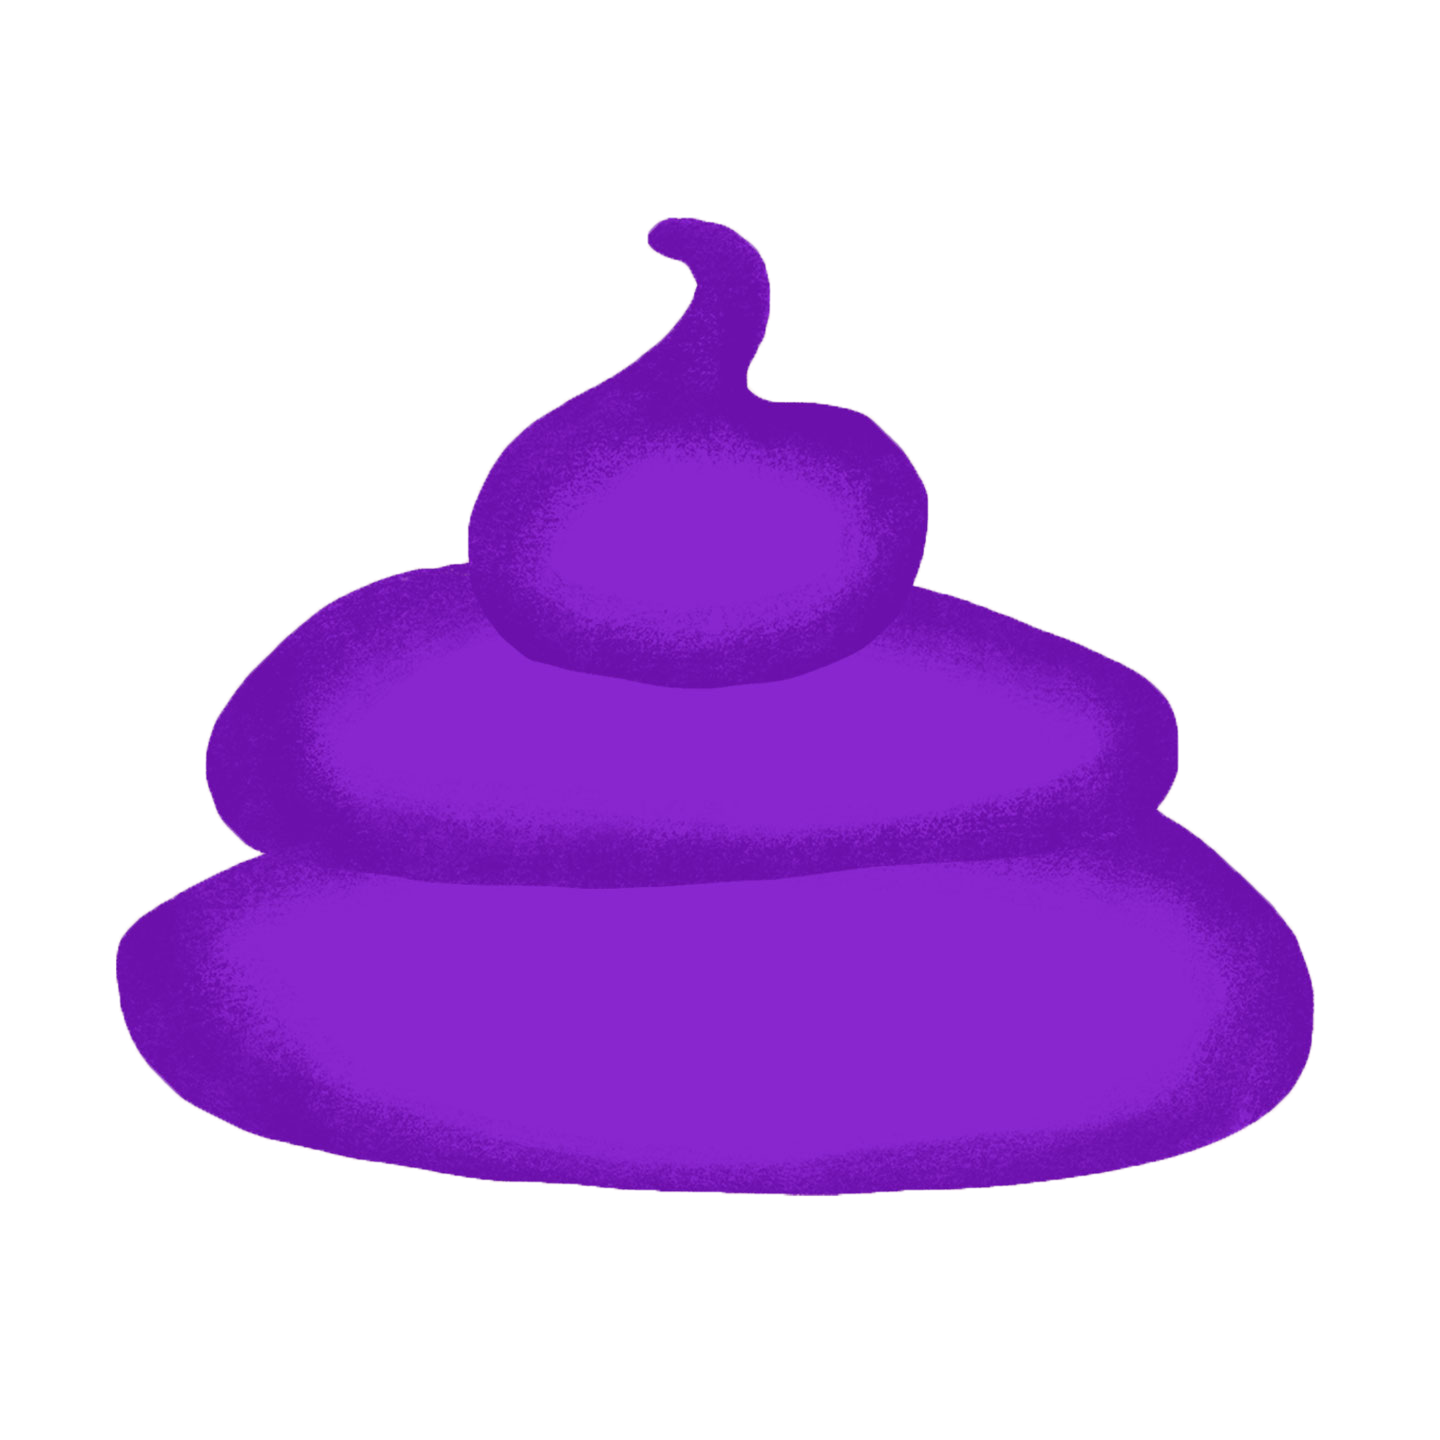 dog poop color chart: purple poop